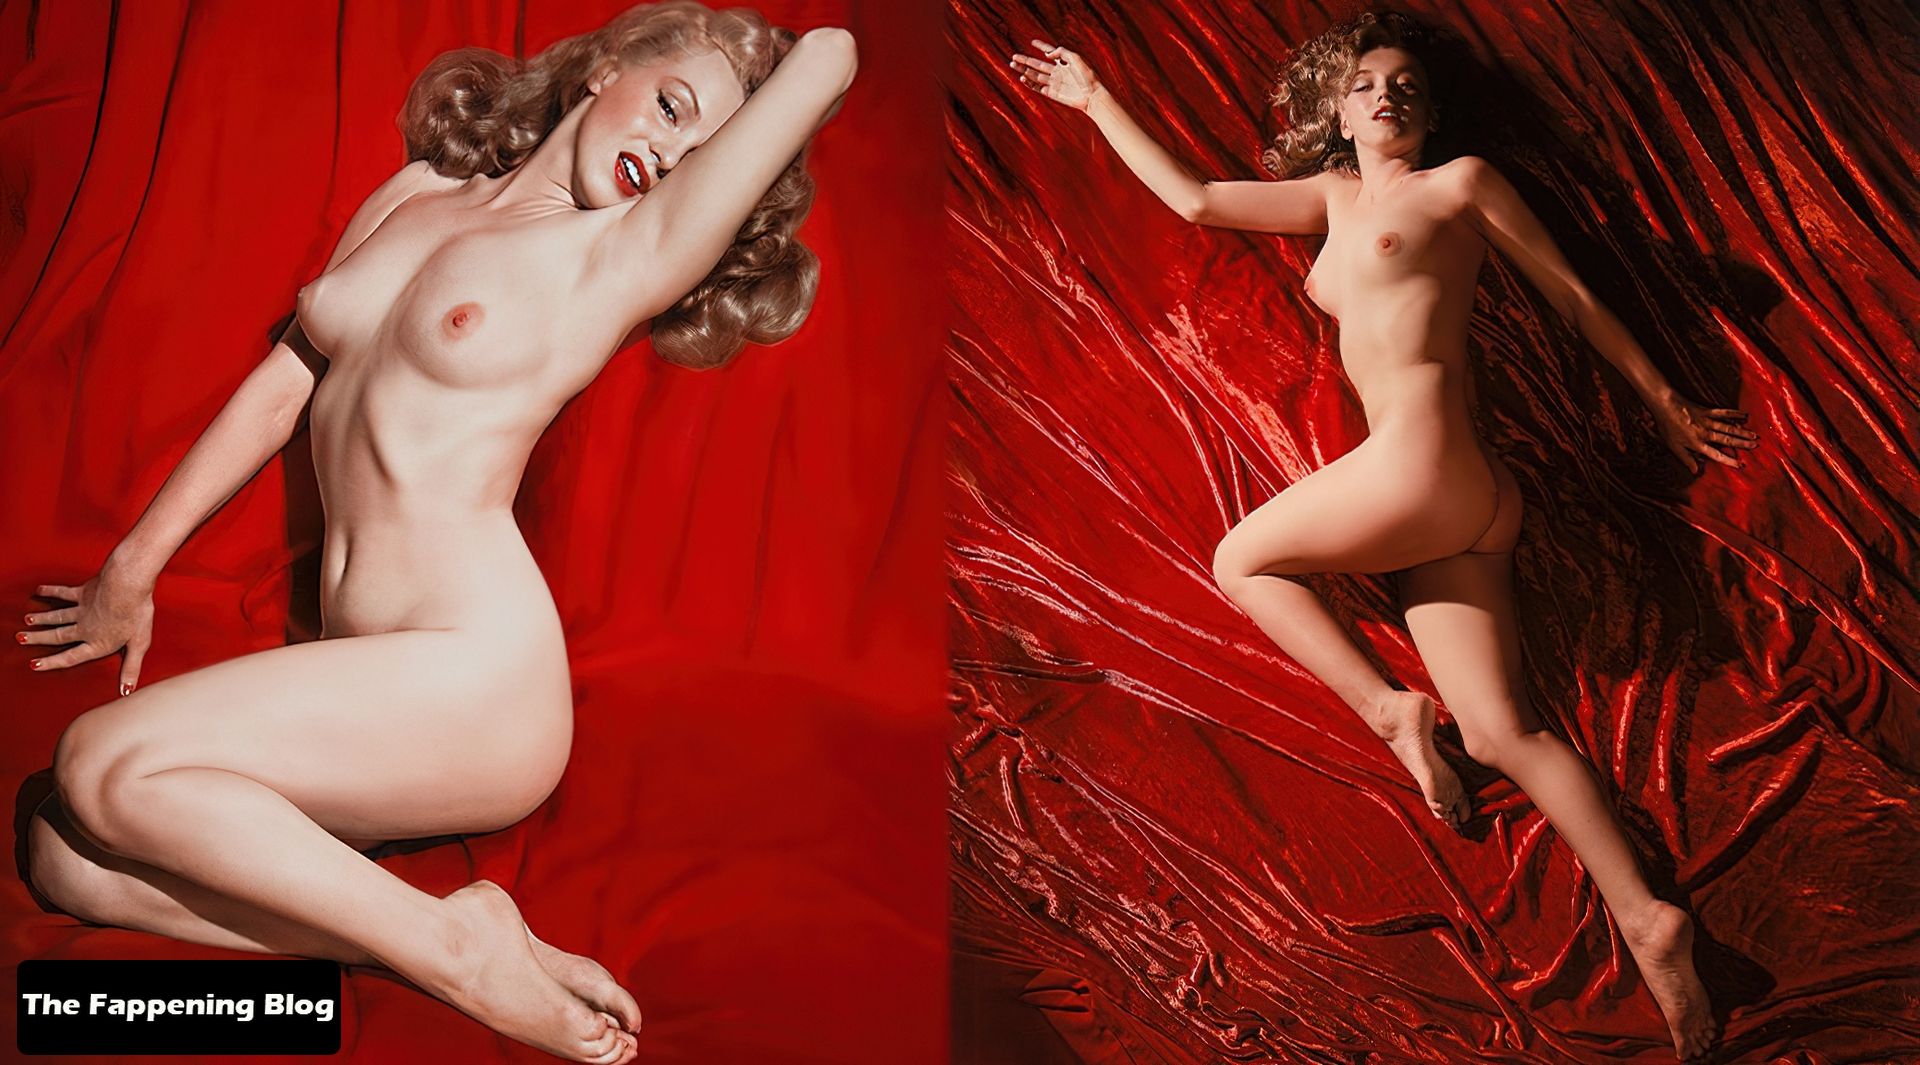 Marilyn-Monroe-Nude-The-Fappening-Blog-3.jpg